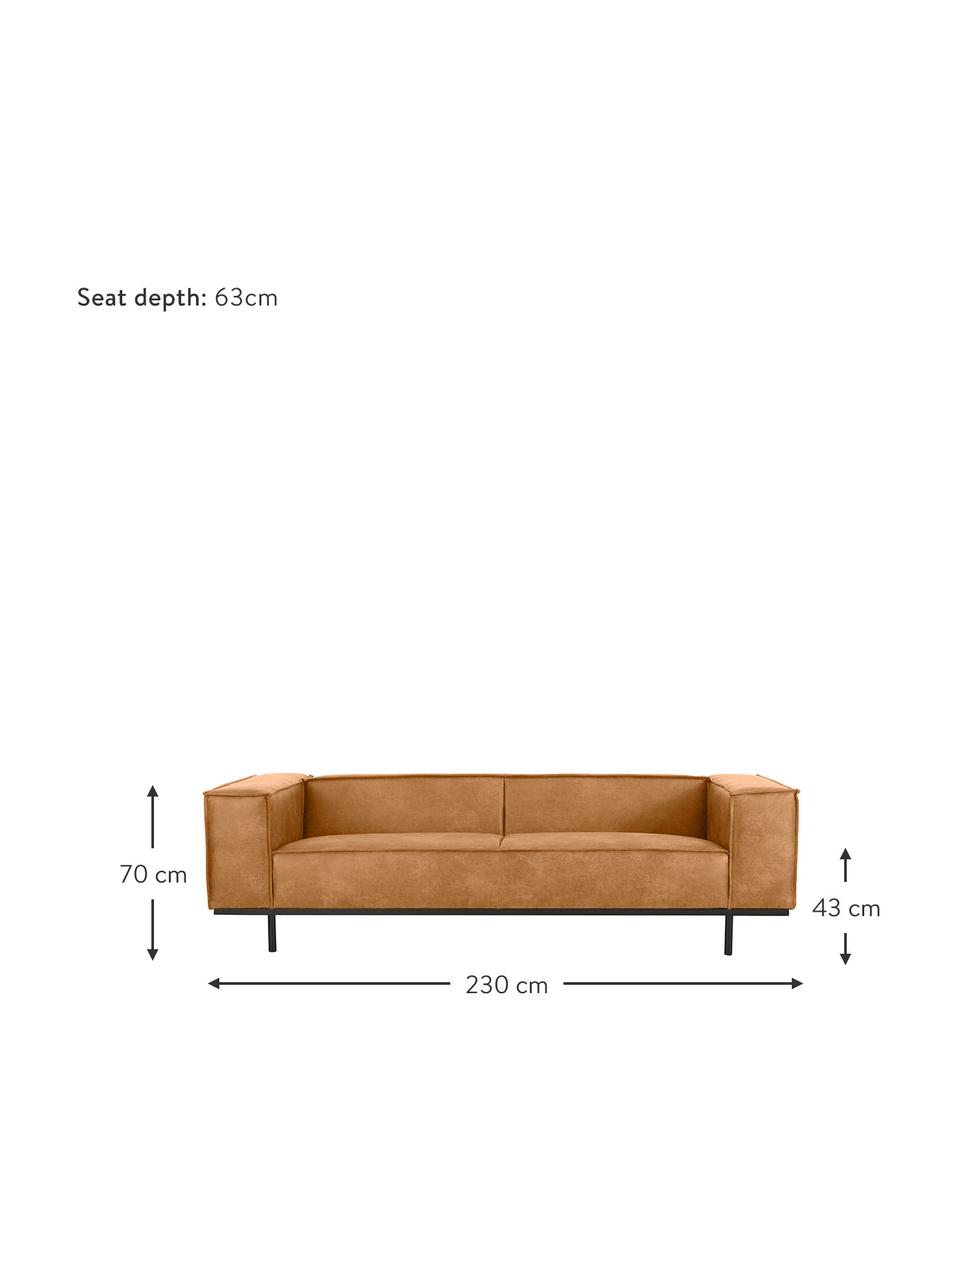 Sofa skórzana z metalowymi nogami Abigail (3-osobowa), Tapicerka: 70% skóra, 30% poliester , Nogi: metal lakierowany, Brązowa skóra, S 230 x G 95 cm